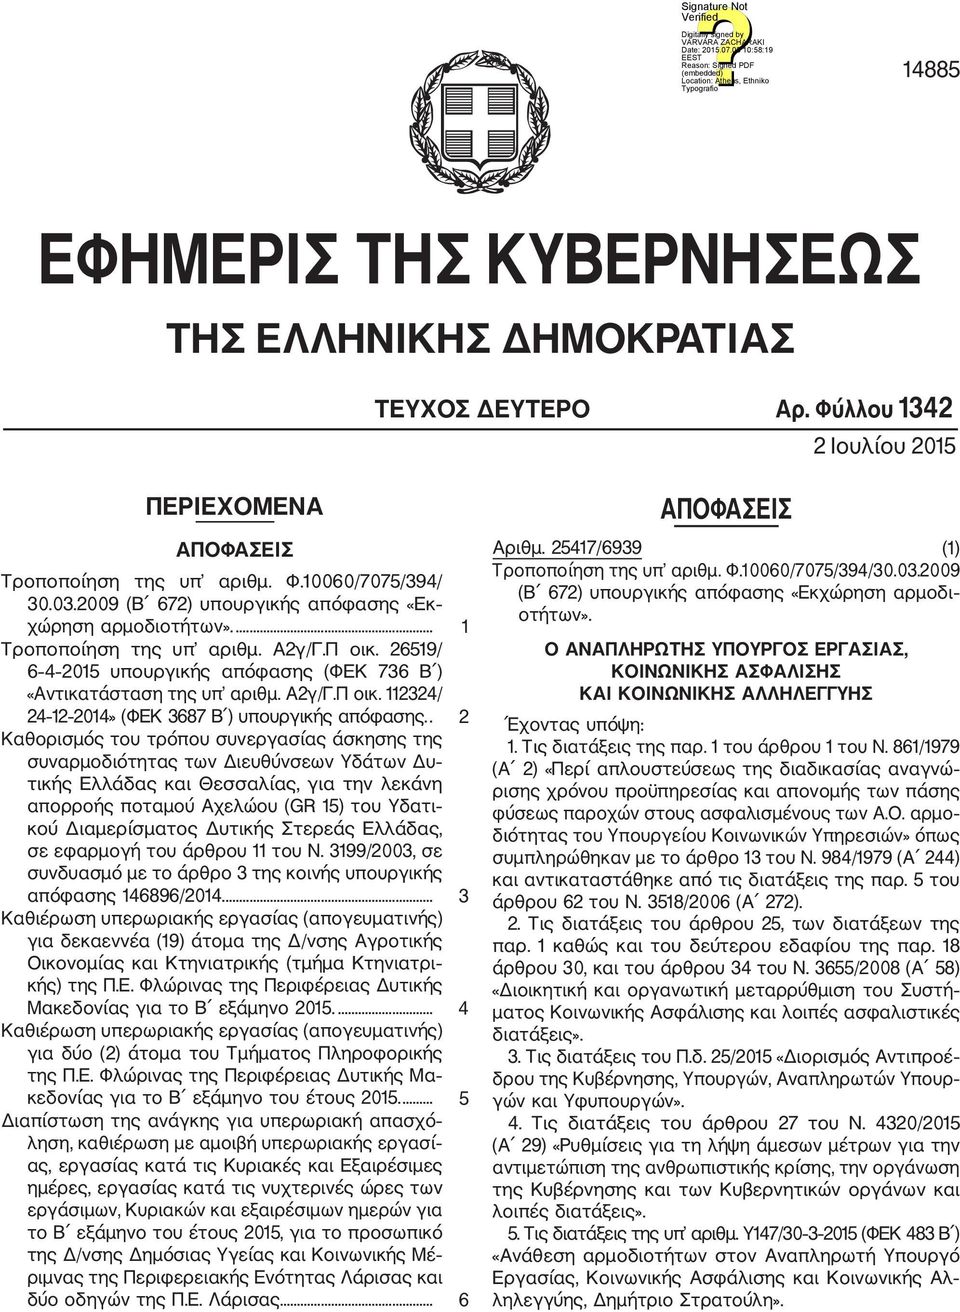 . 2 Καθορισμός του τρόπου συνεργασίας άσκησης της συναρμοδιότητας των Διευθύνσεων Υδάτων Δυ τικής Ελλάδας και Θεσσαλίας, για την λεκάνη απορροής ποταμού Αχελώου (GR 15) του Υδατι κού Διαμερίσματος